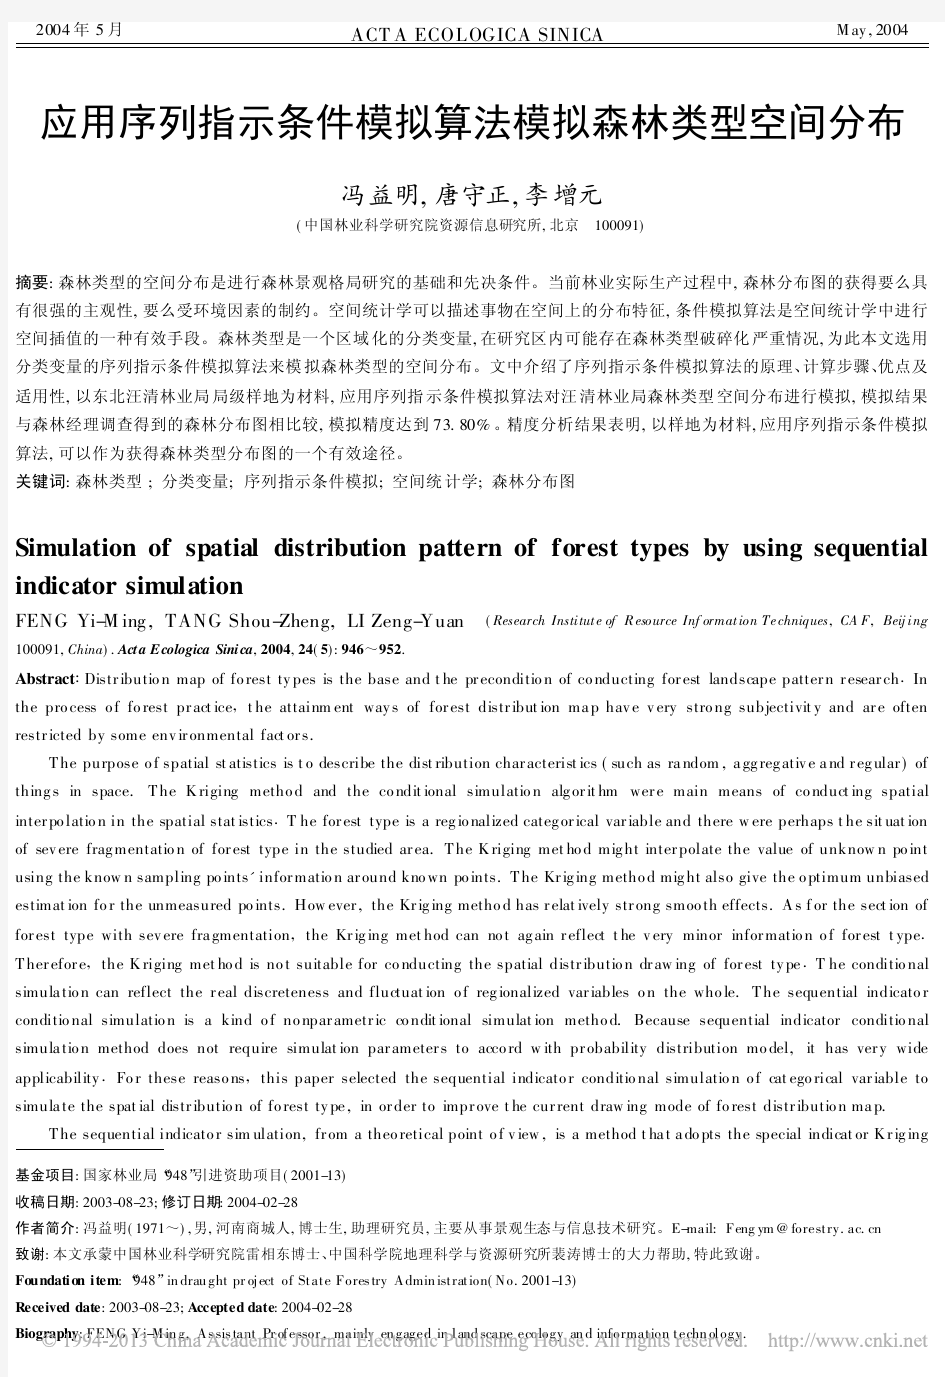 应用序列指示条件模拟算法模拟森林类型空间分布_冯益明 - 副本